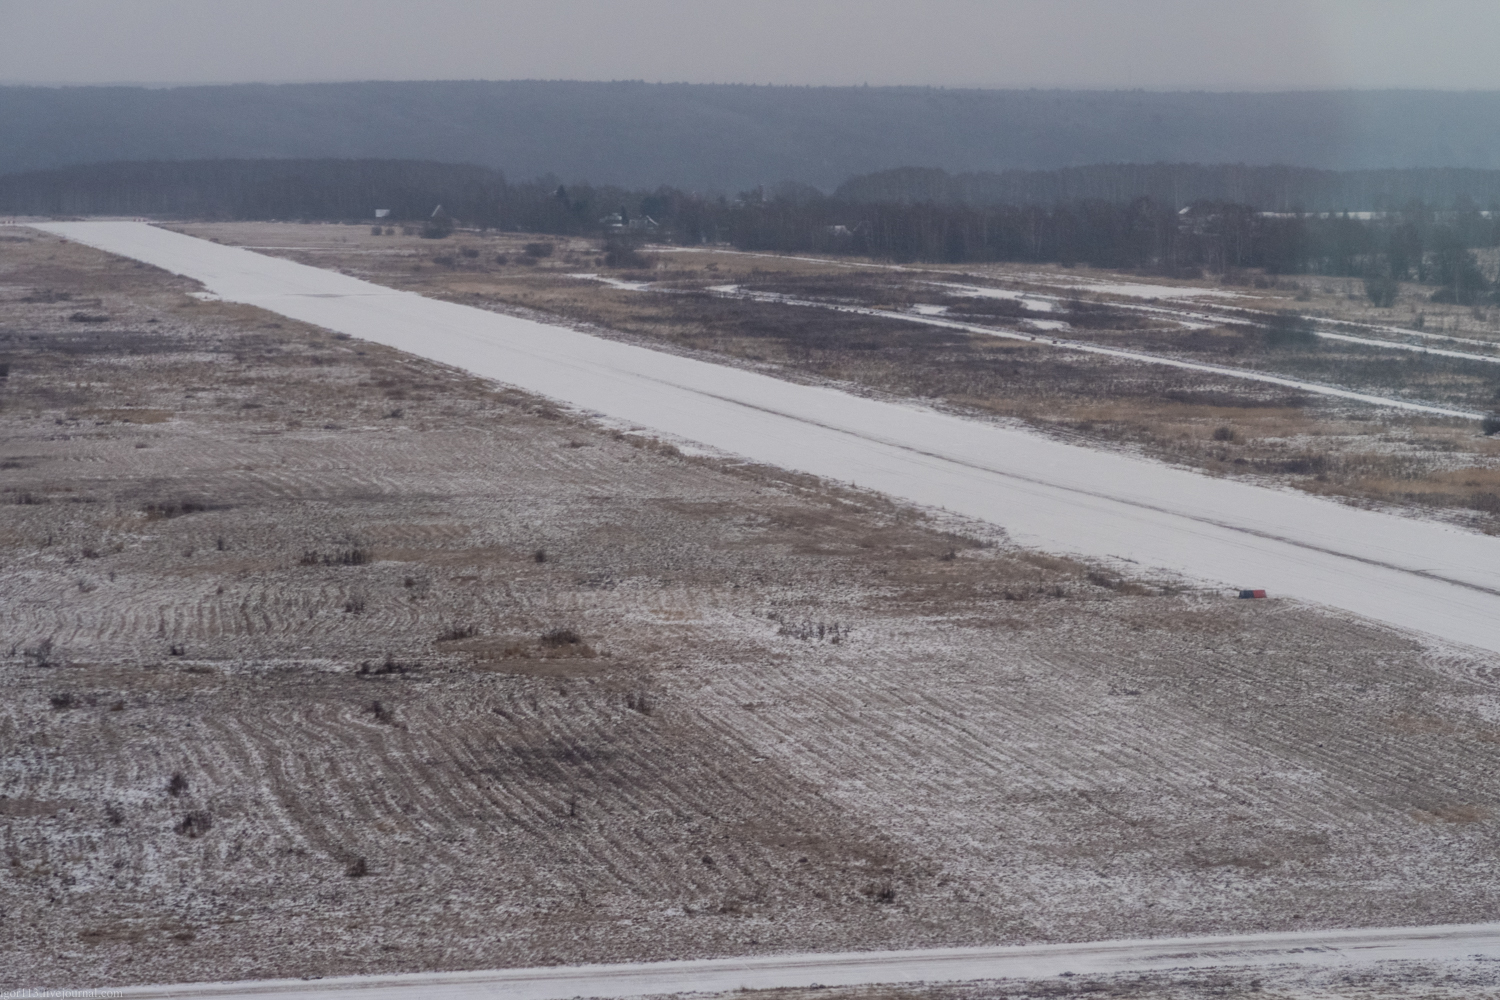 Шашлык на аэродроме Орешково 13 января 2018 года ч1. 